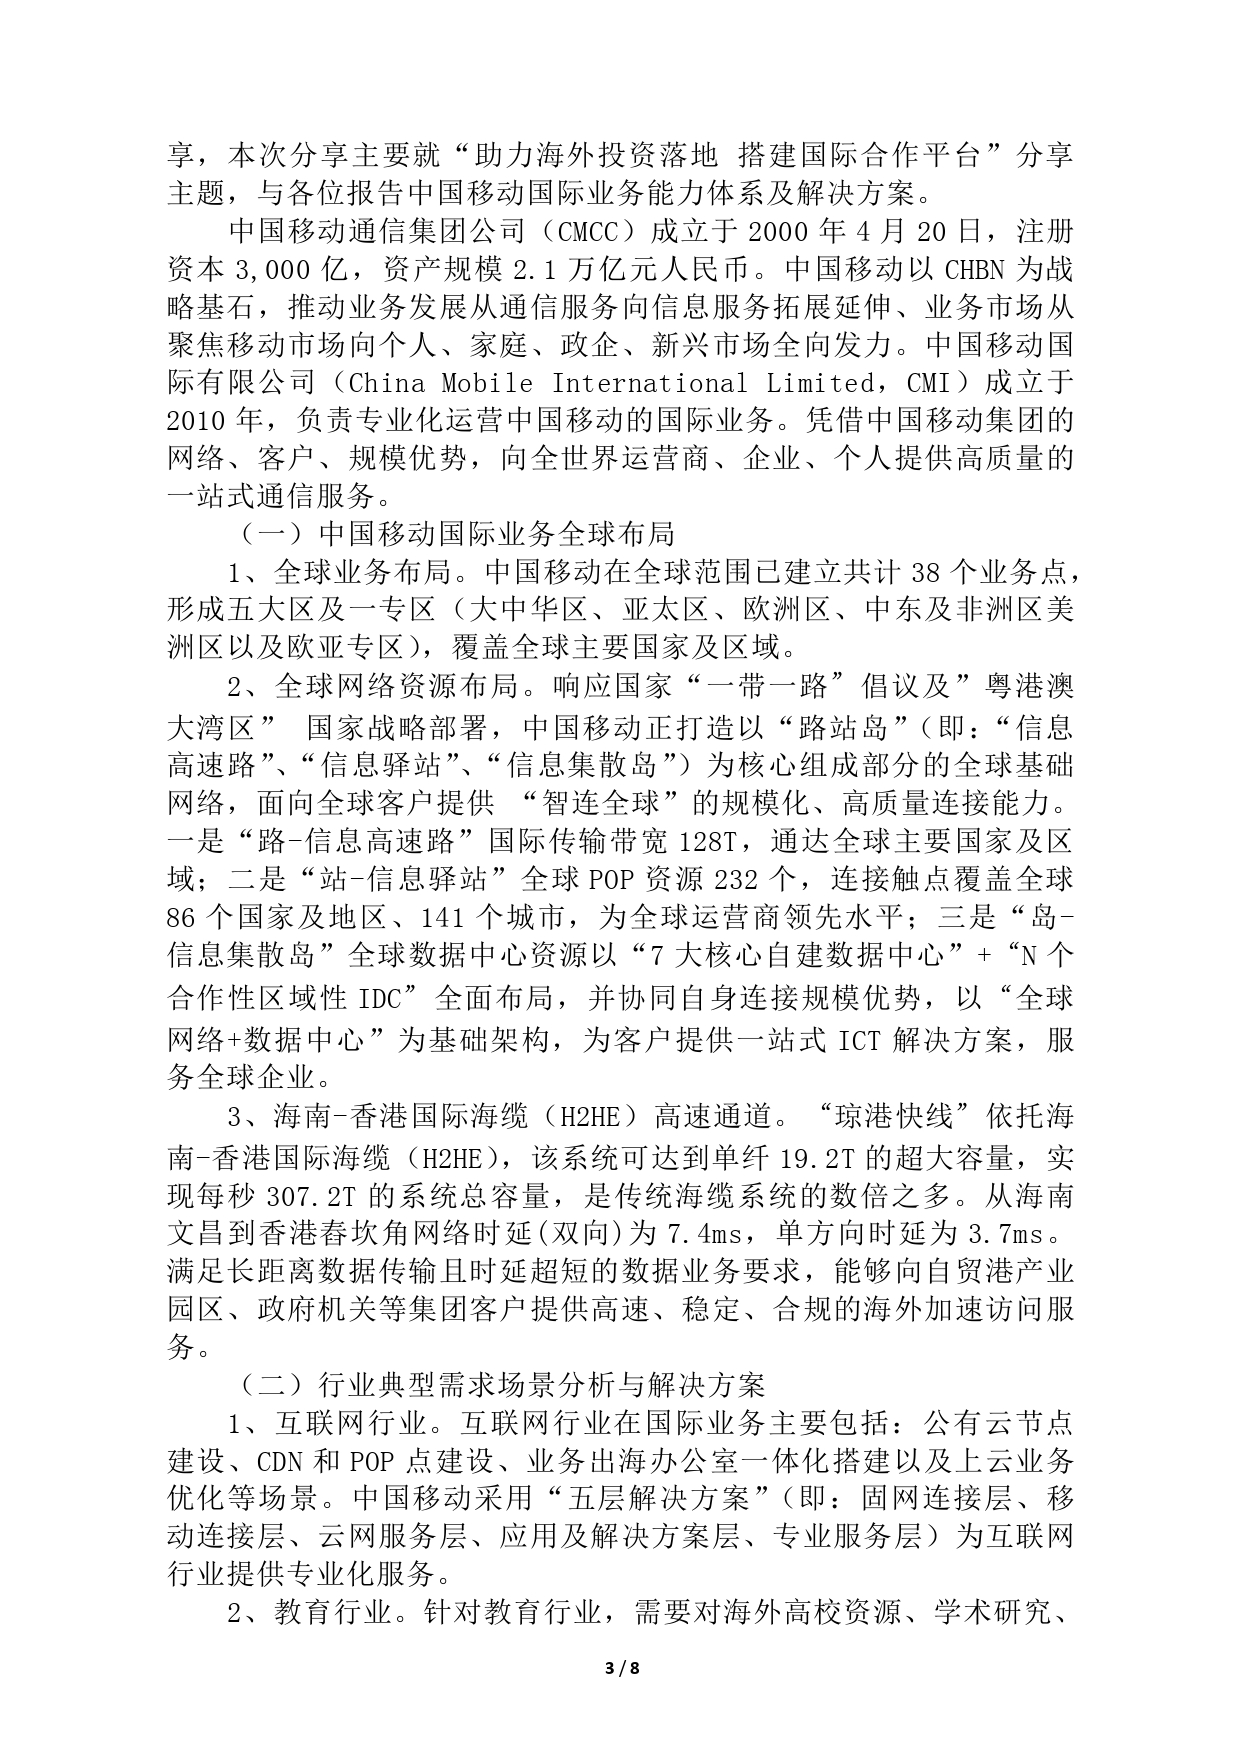 汇聚中外投资资源 融升金融服务活力(3)(1)_page-0003.jpg